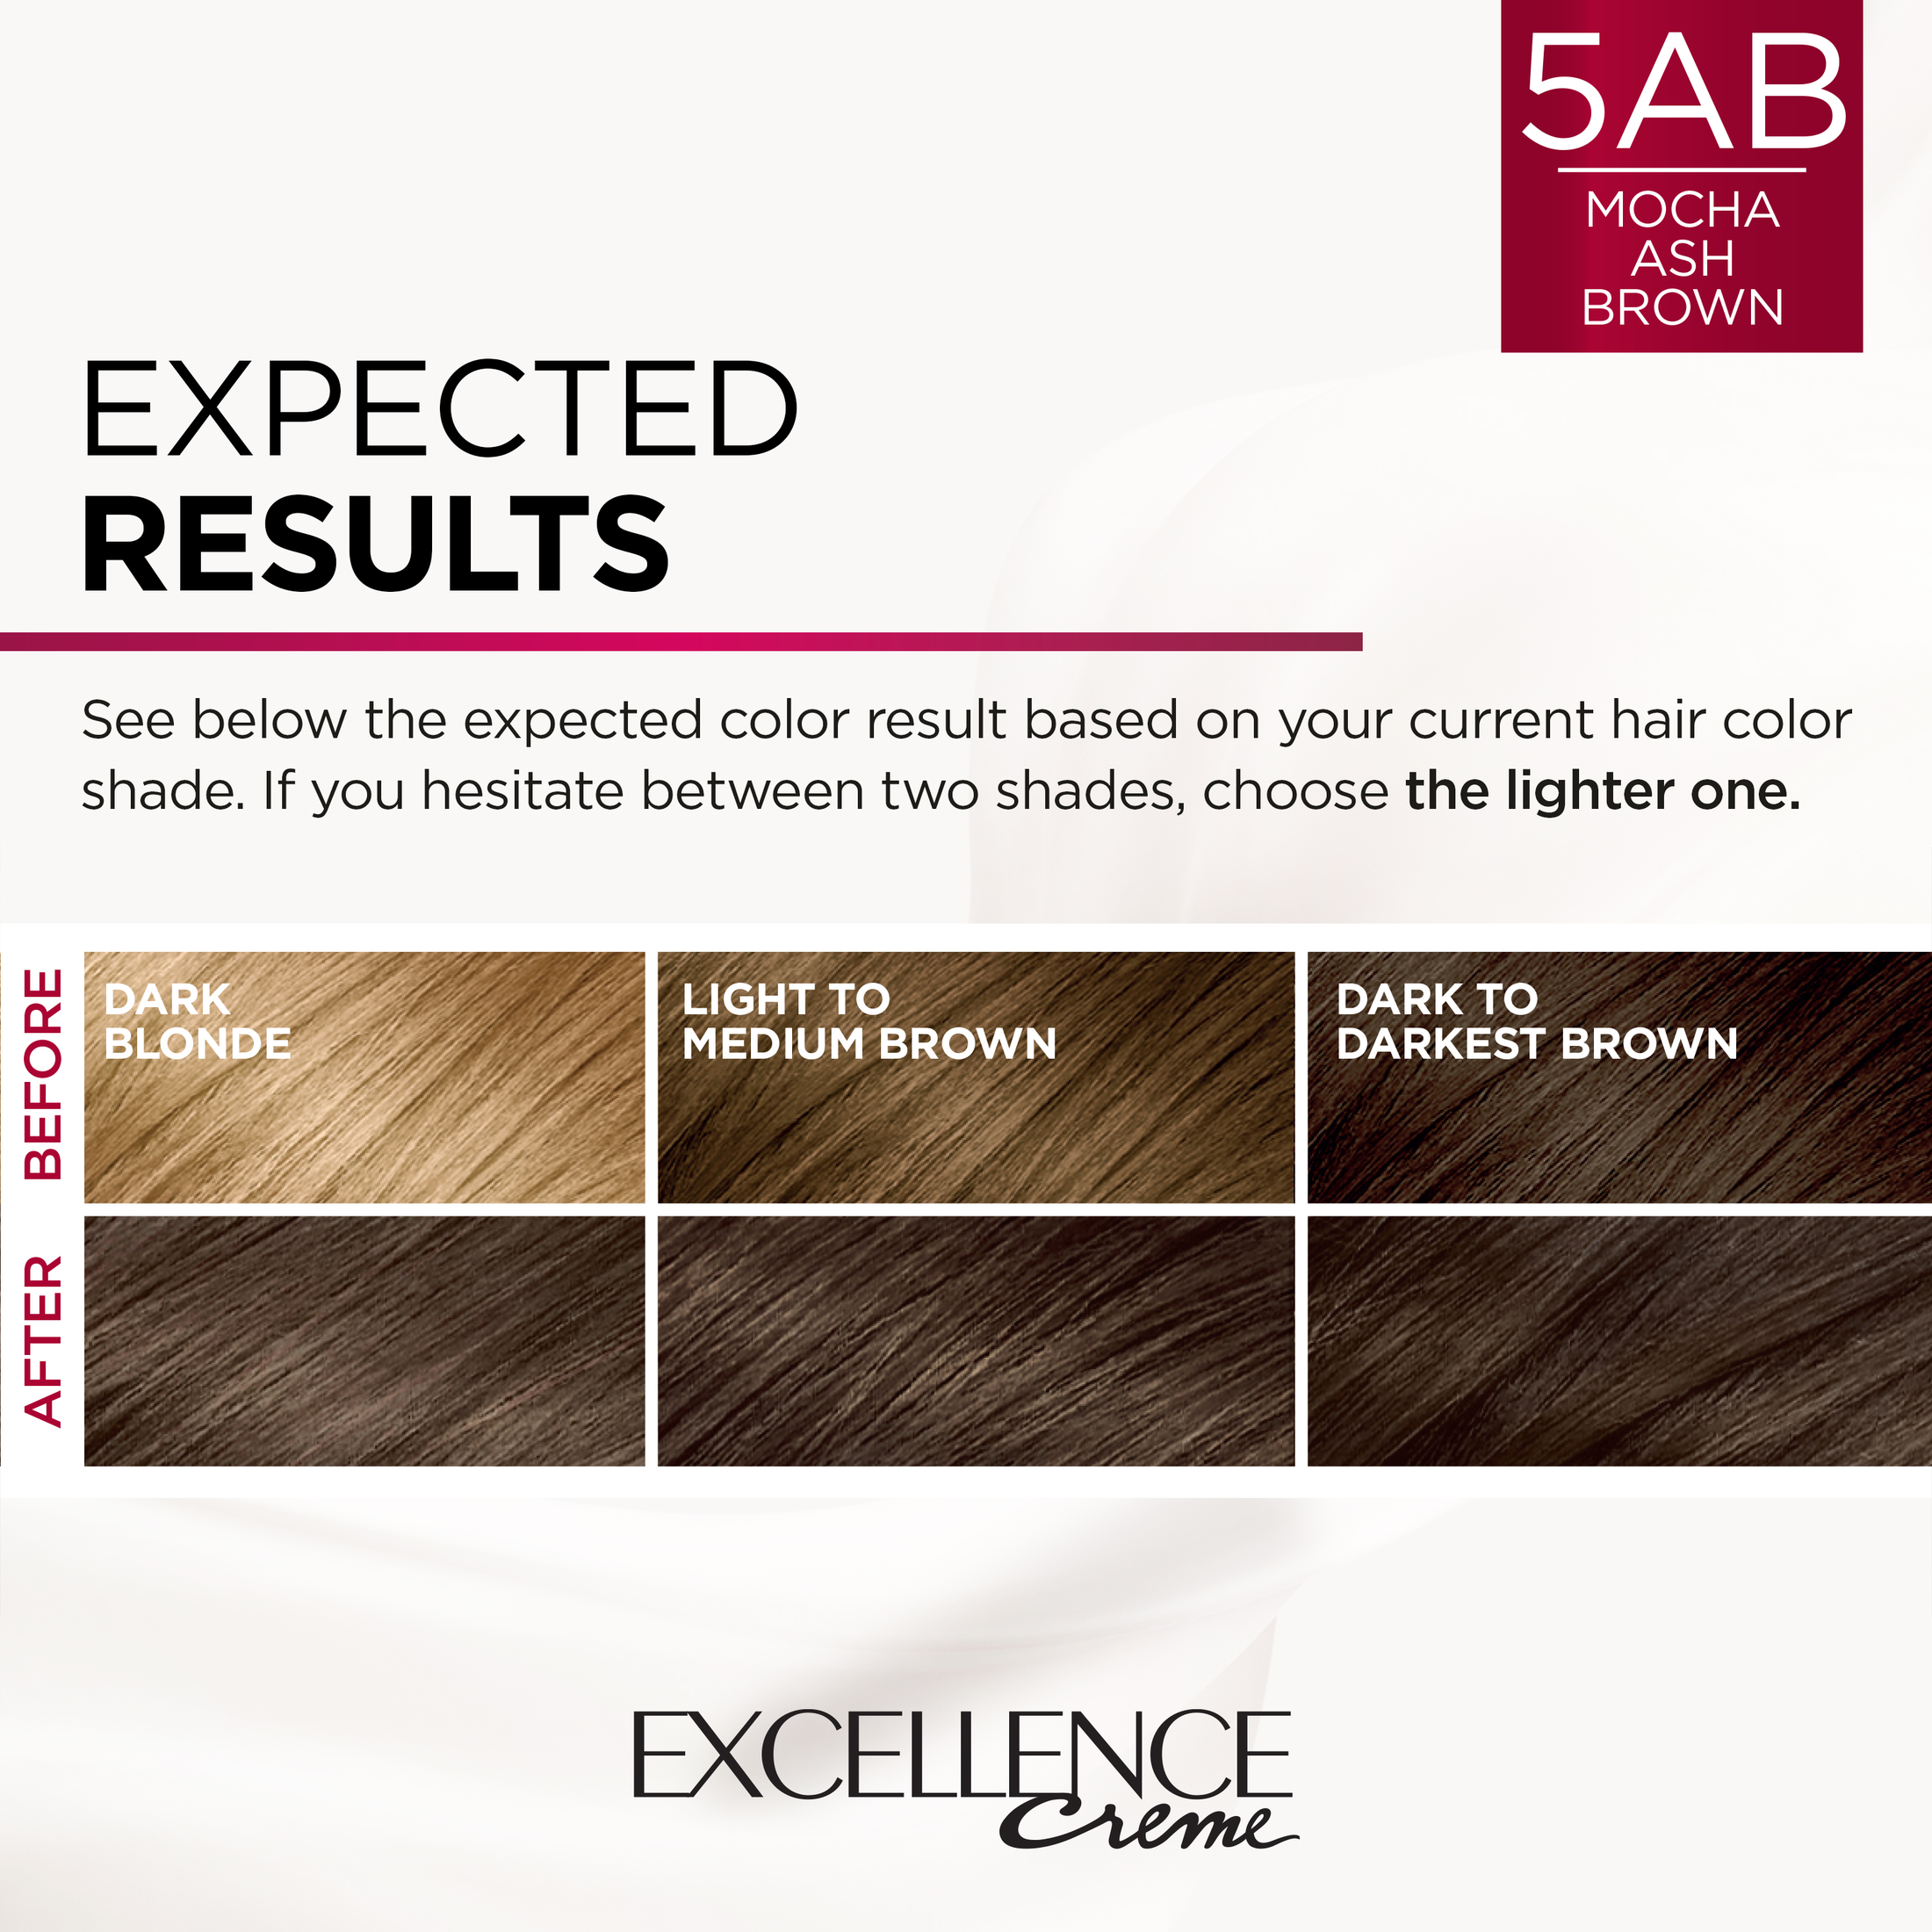 L'Oreal Paris Excellence Creme Permanent Hair Color, 5AB Mocha Ash Brown - image 5 of 8